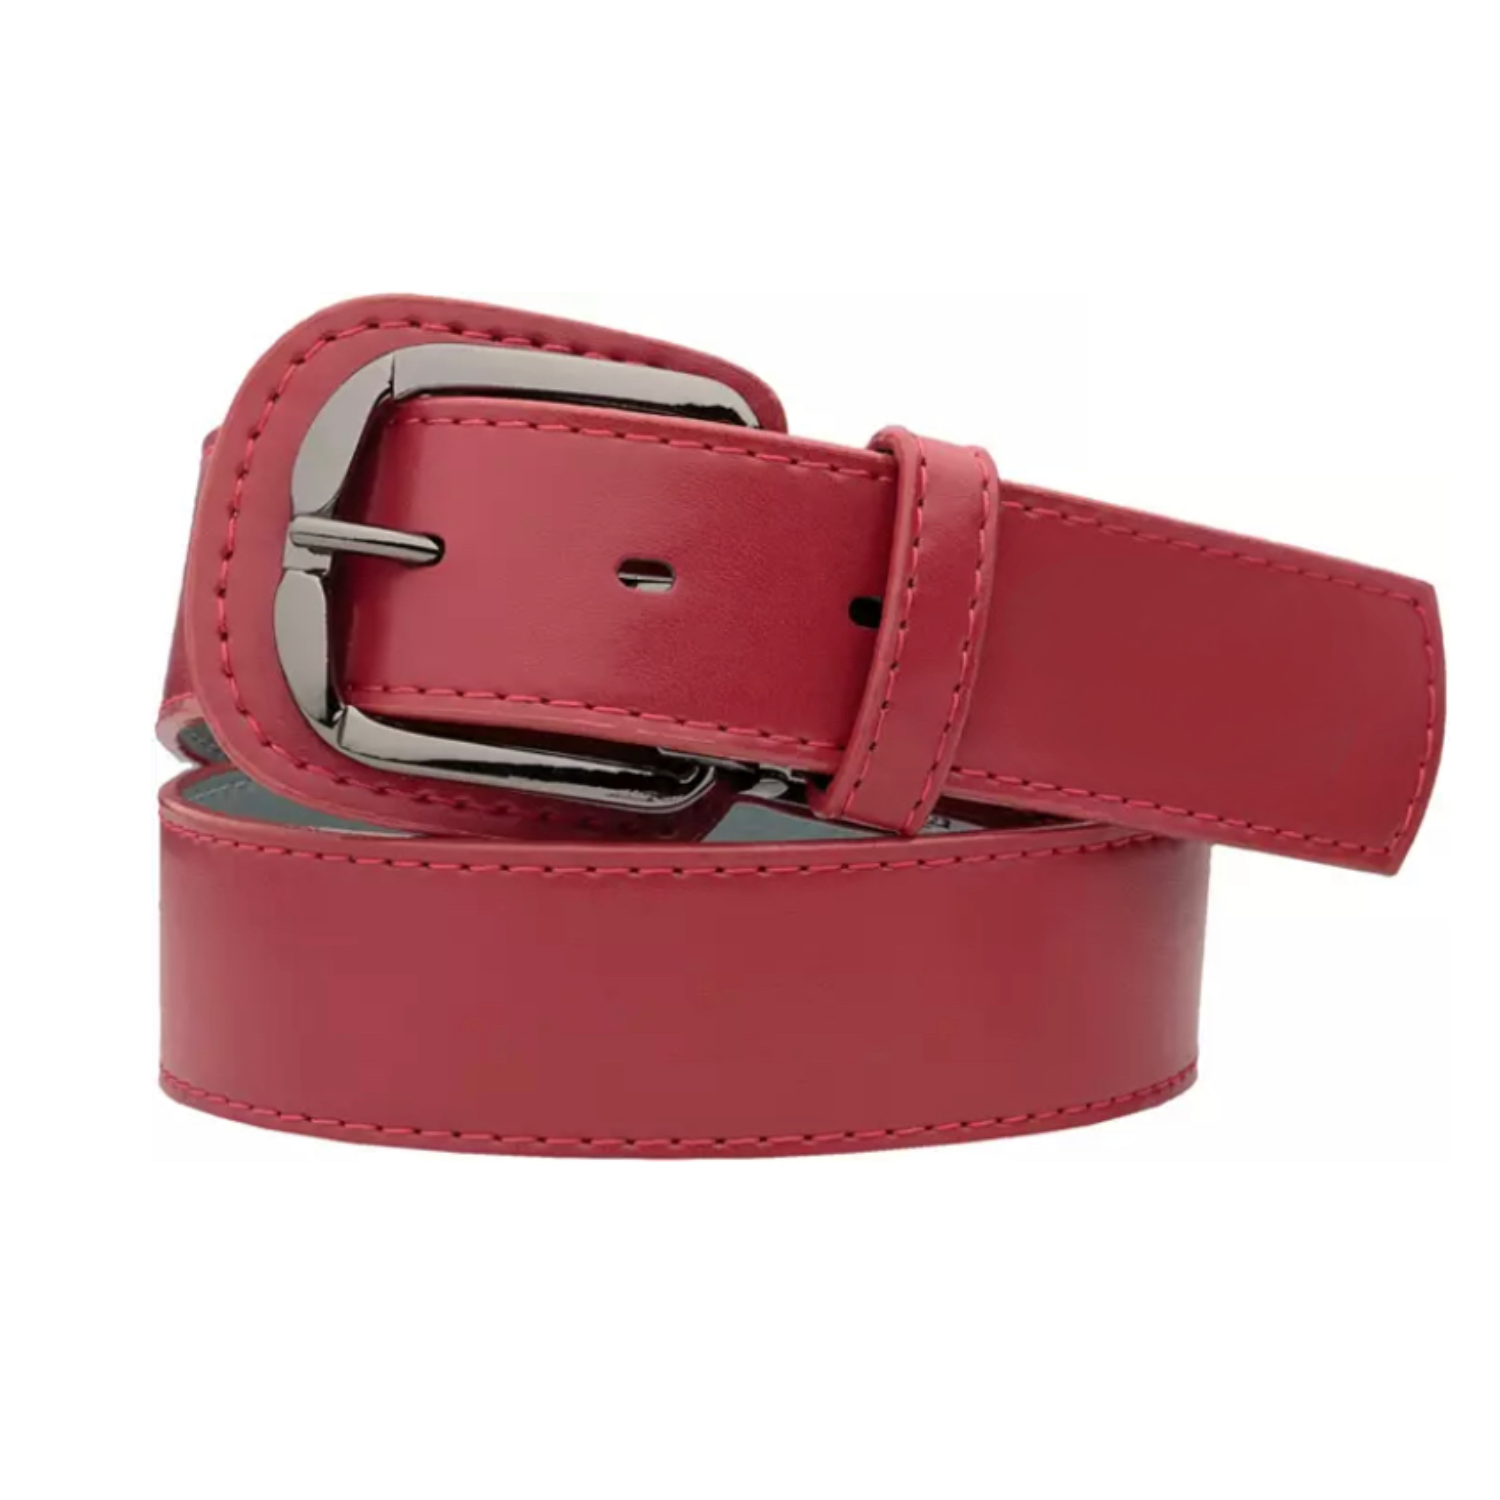 Standard Red Baller Leather Belt